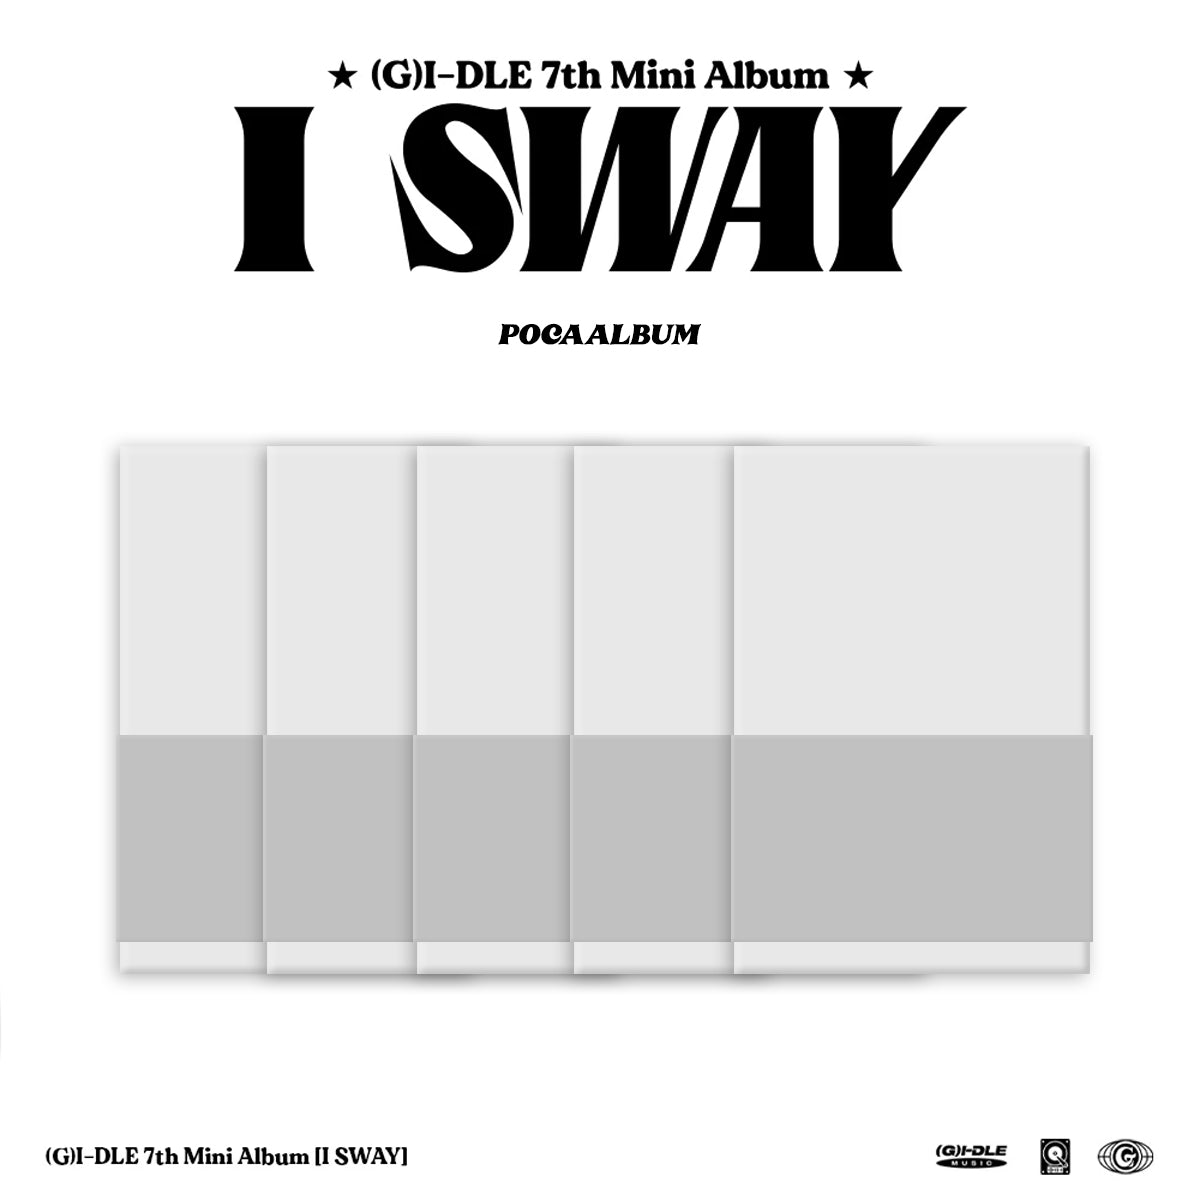 (G)I-DLE | 7TH MINI ALBUM |  I SWAY (POCA Ver.)